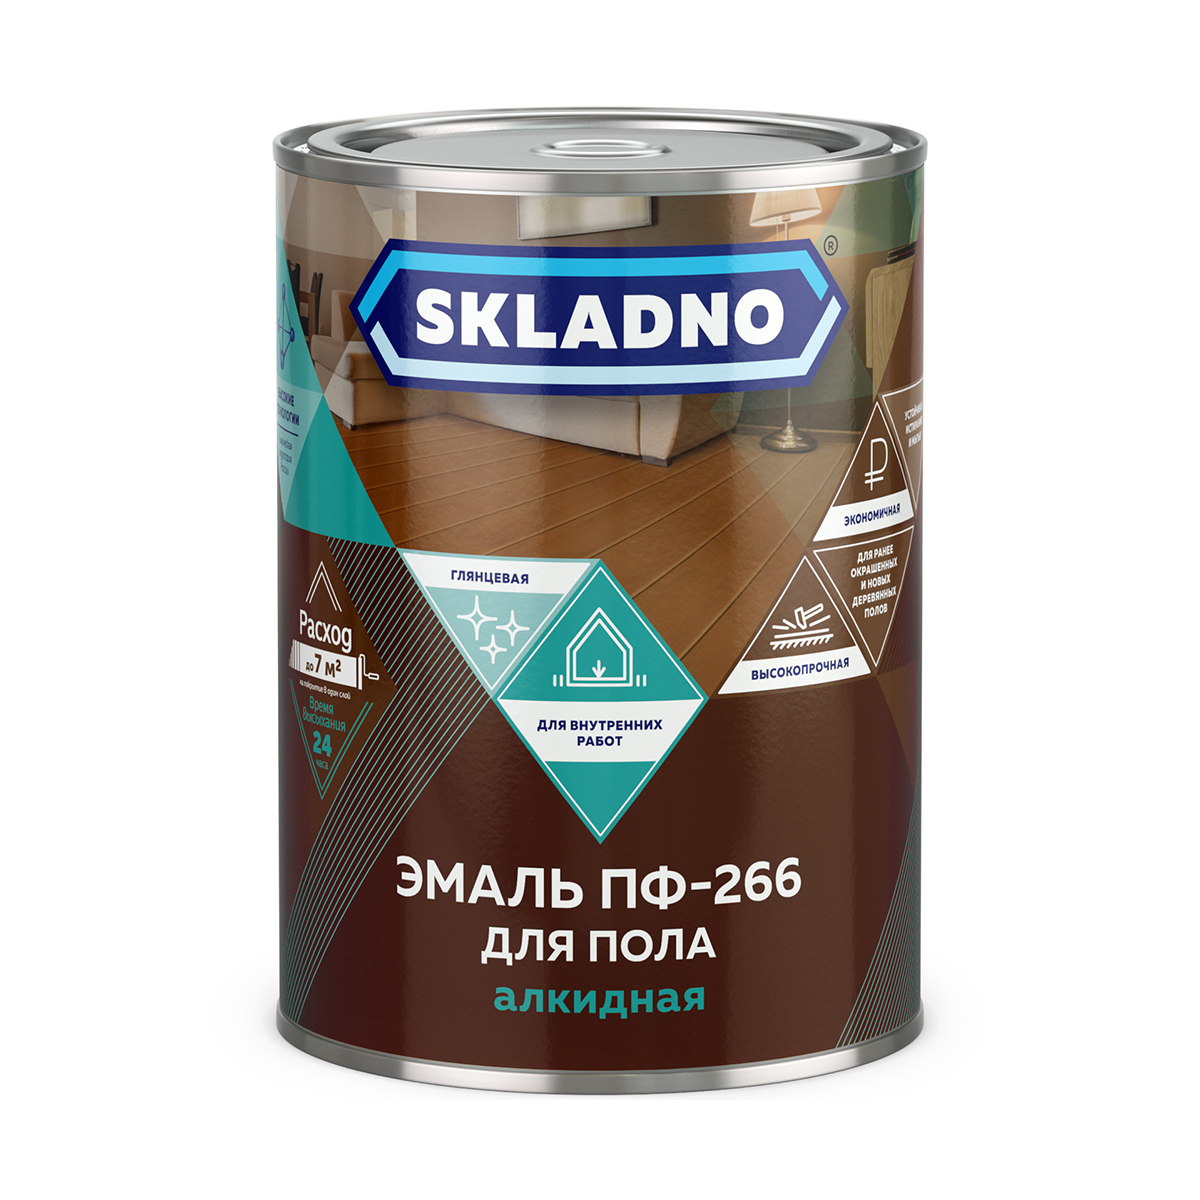 фото Эмаль пф-266 для пола skladno, алкидная, глянцевая, 0,8 кг, красно-коричневая